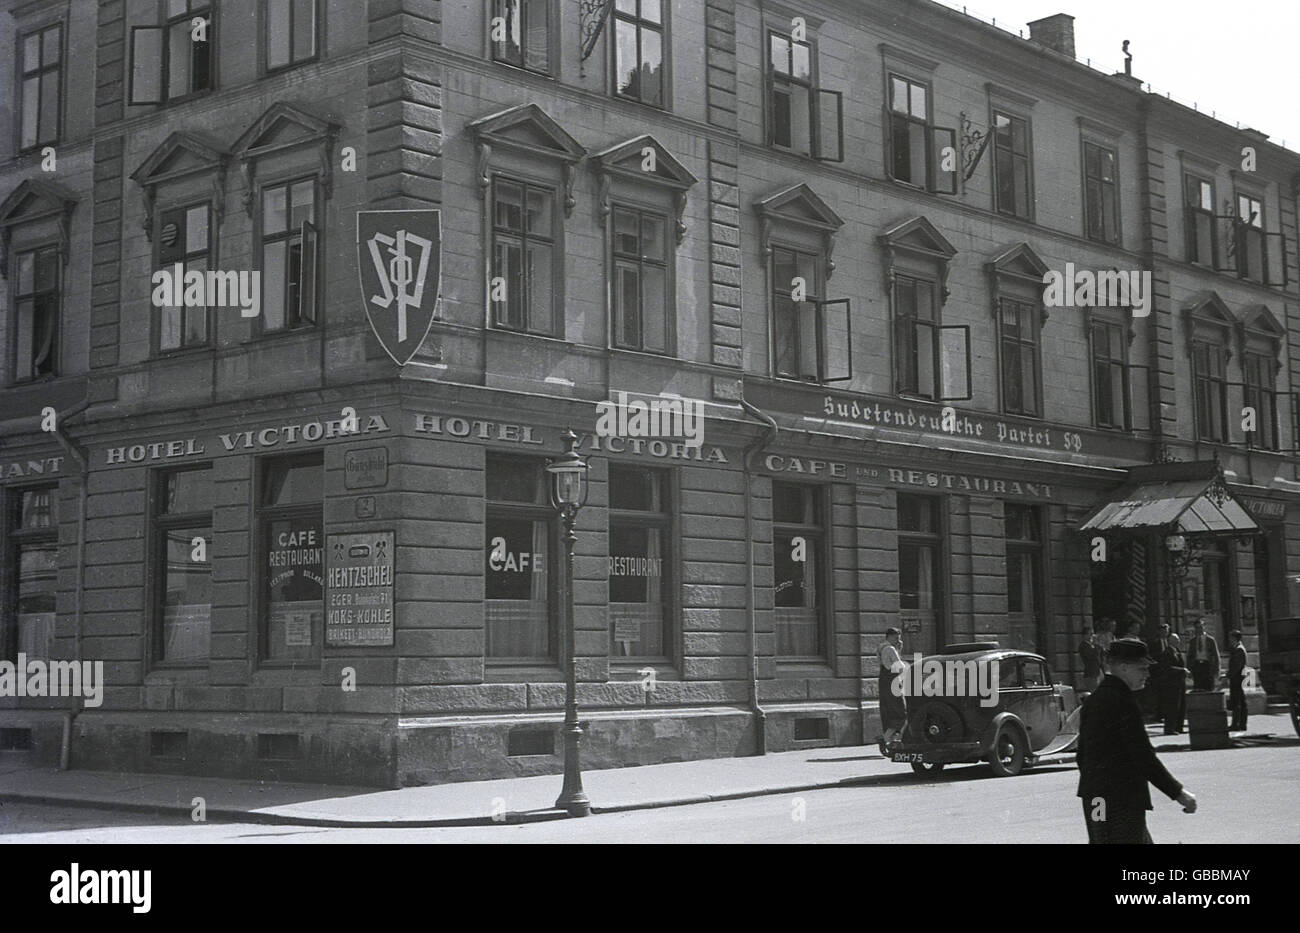 der 1930er Jahre zeigt historische Bild das Hauptquartier der Sudeten Deutsch-Partei (SdP) über das Hotel Victoria in Cheb (Eger) in den Sudeten, in der Tschechoslowakei der Zwischenkriegszeit. Ein Auto mit einem britischen Nummernschild ist direkt außerhalb geparkt. Stockfoto